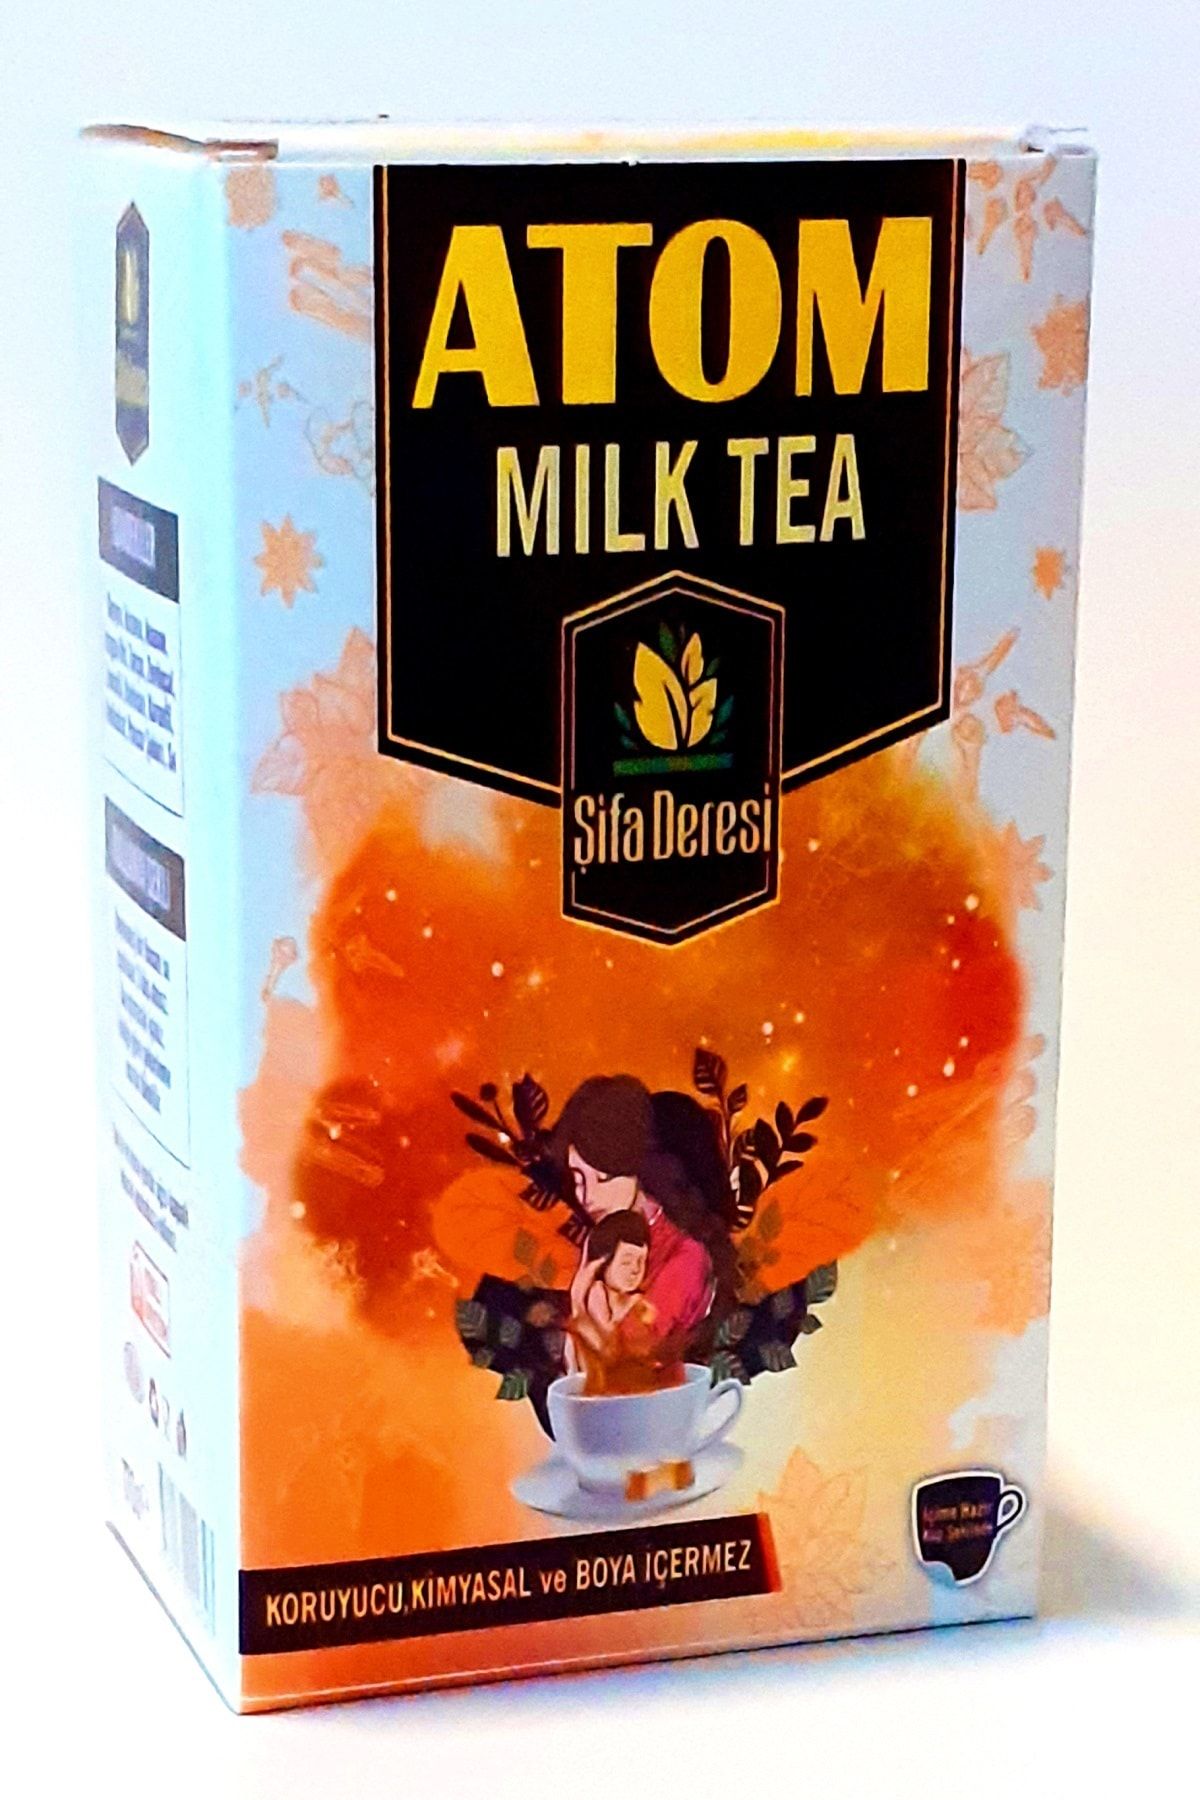 GLŞ ŞİFAHANEM ORGANİK AKTAR Atom Çayı Anne Sütü Arttırıcı Milk Tea 2pkt